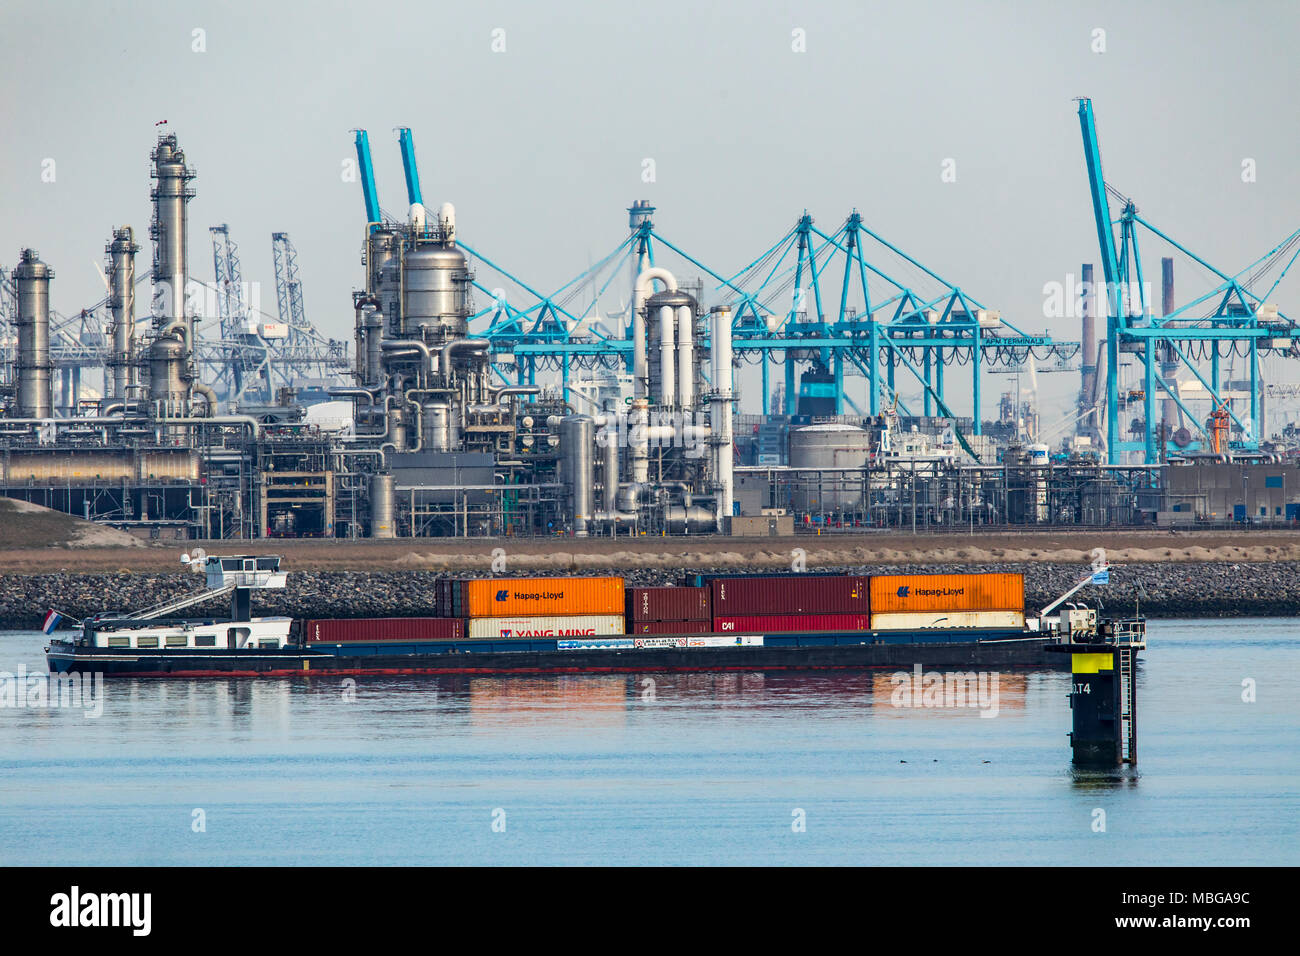 Der Hafen von Rotterdam, Niederlande, Maasvlakte 2 Deep Sea Port, auf einer künstlich angelegten Land weg die ursprüngliche Küste, BP-Raffinerie in Rotterdam B. Stockfoto